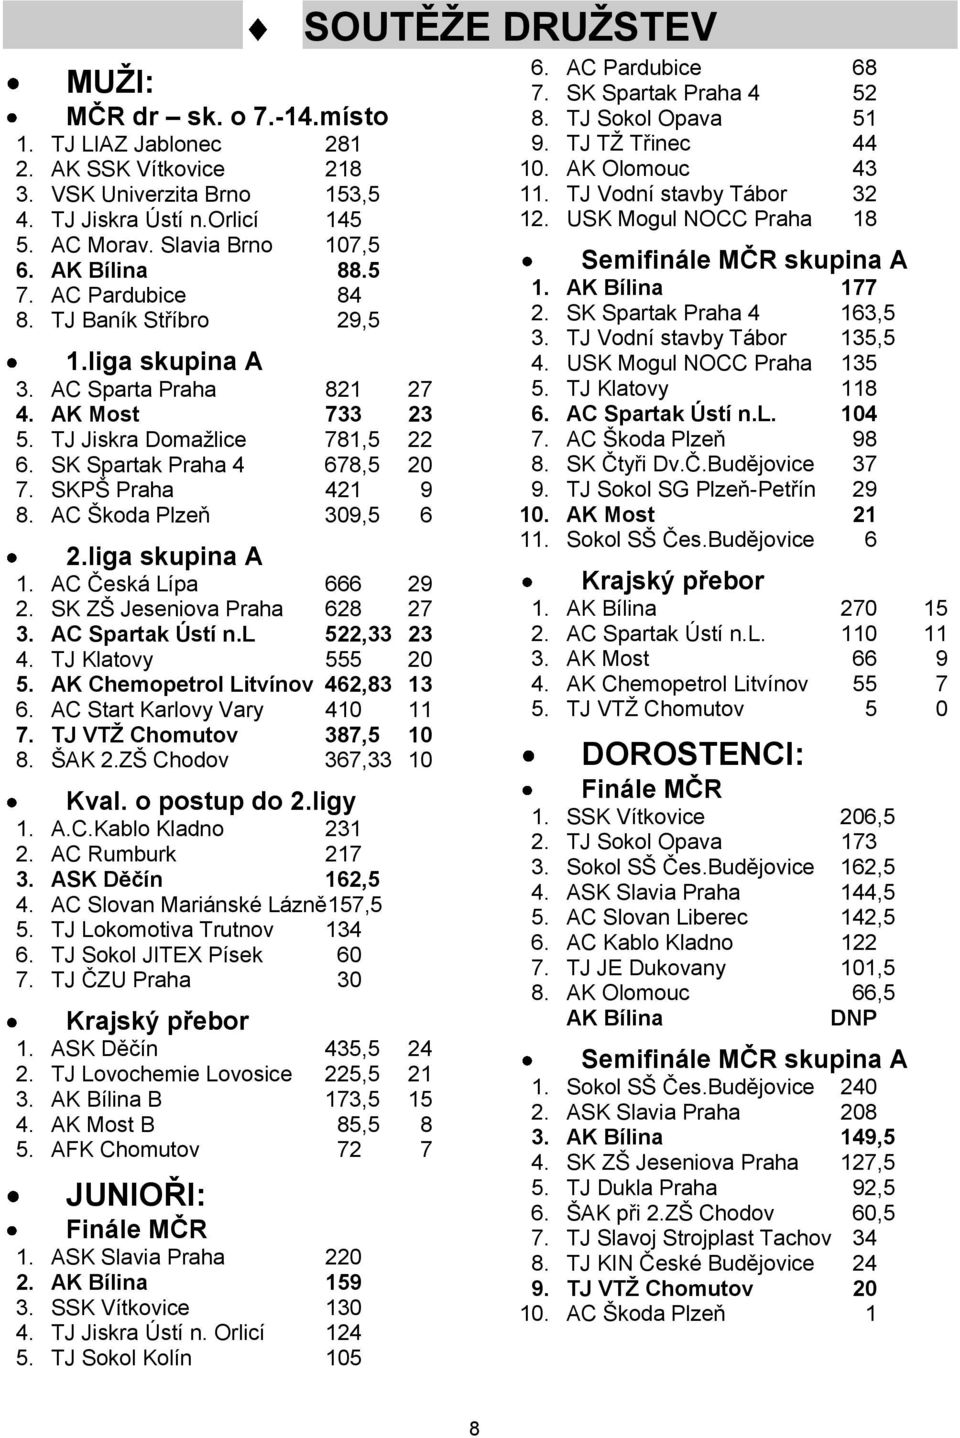 AC Škoda Plzeň 309,5 6 2.liga skupina A 1. AC Česká Lípa 666 29 2. SK ZŠ Jeseniova Praha 628 27 3. AC Spartak Ústí n.l 522,33 23 4. TJ Klatovy 555 20 5. AK Chemopetrol Litvínov 462,83 13 6.